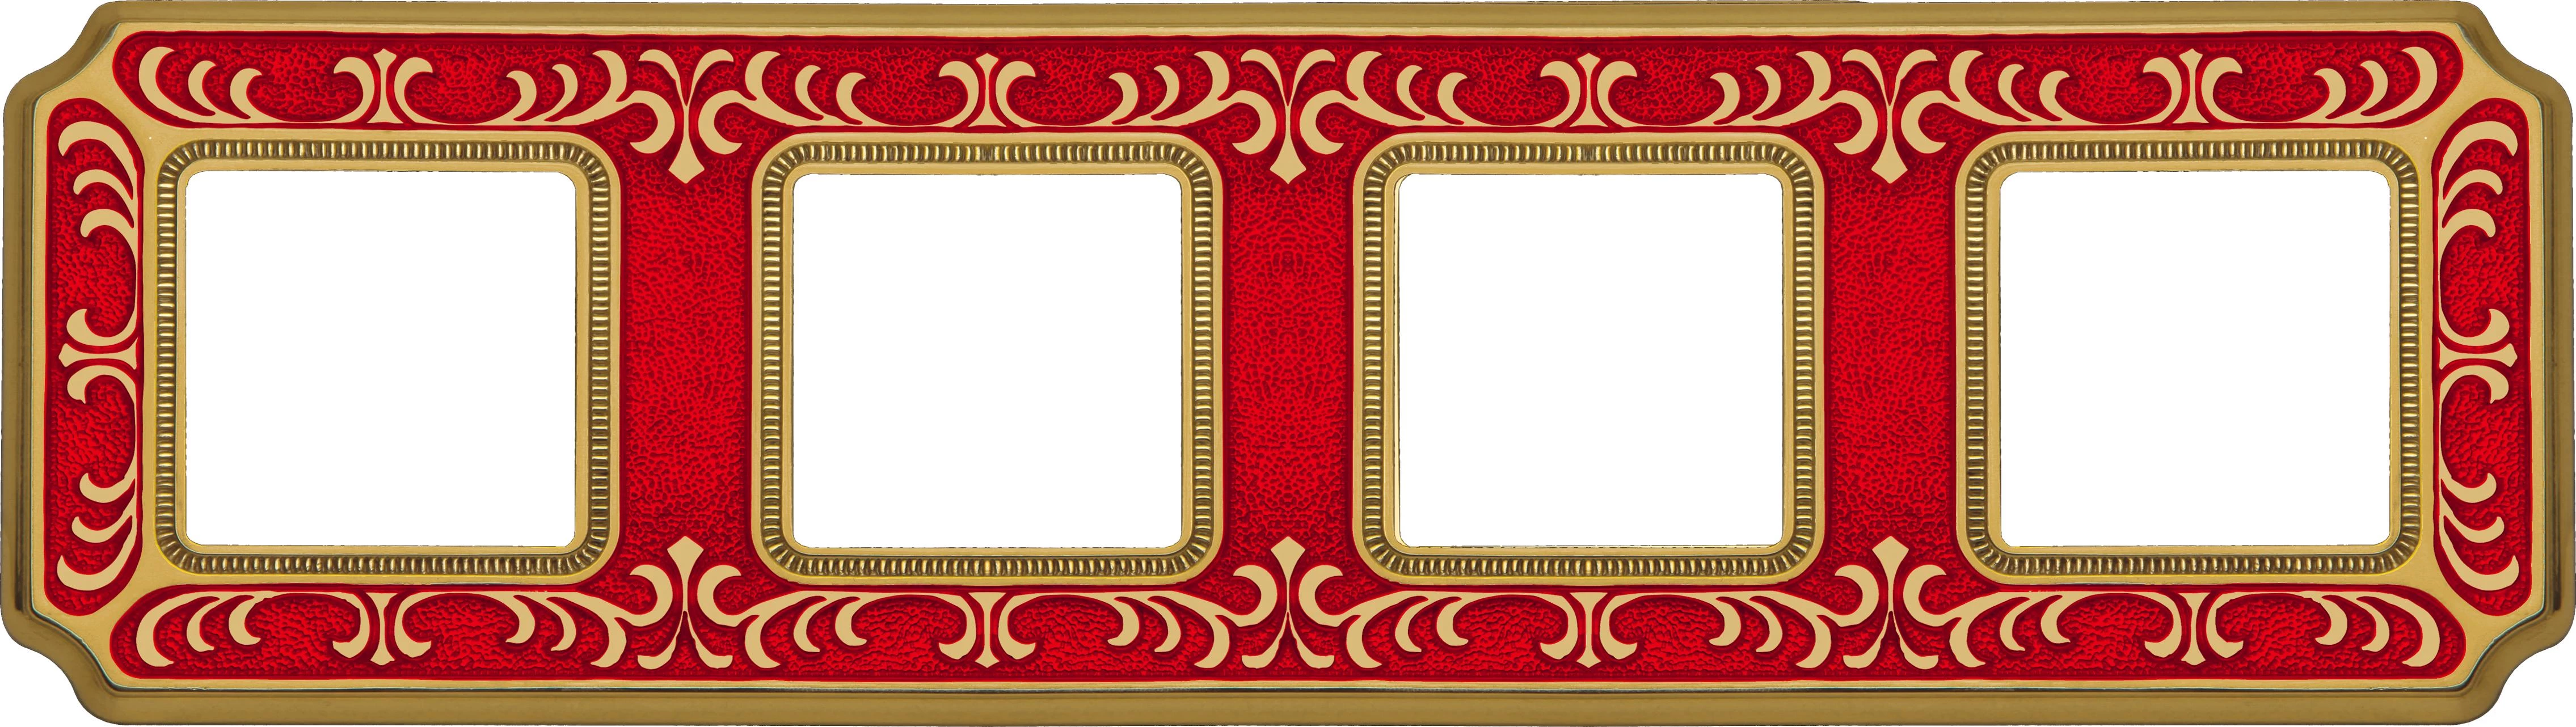 артикул FD01354ROEN название Рамка 4-ая (четверная), Fede, Серия Siena, Рубиново-красный